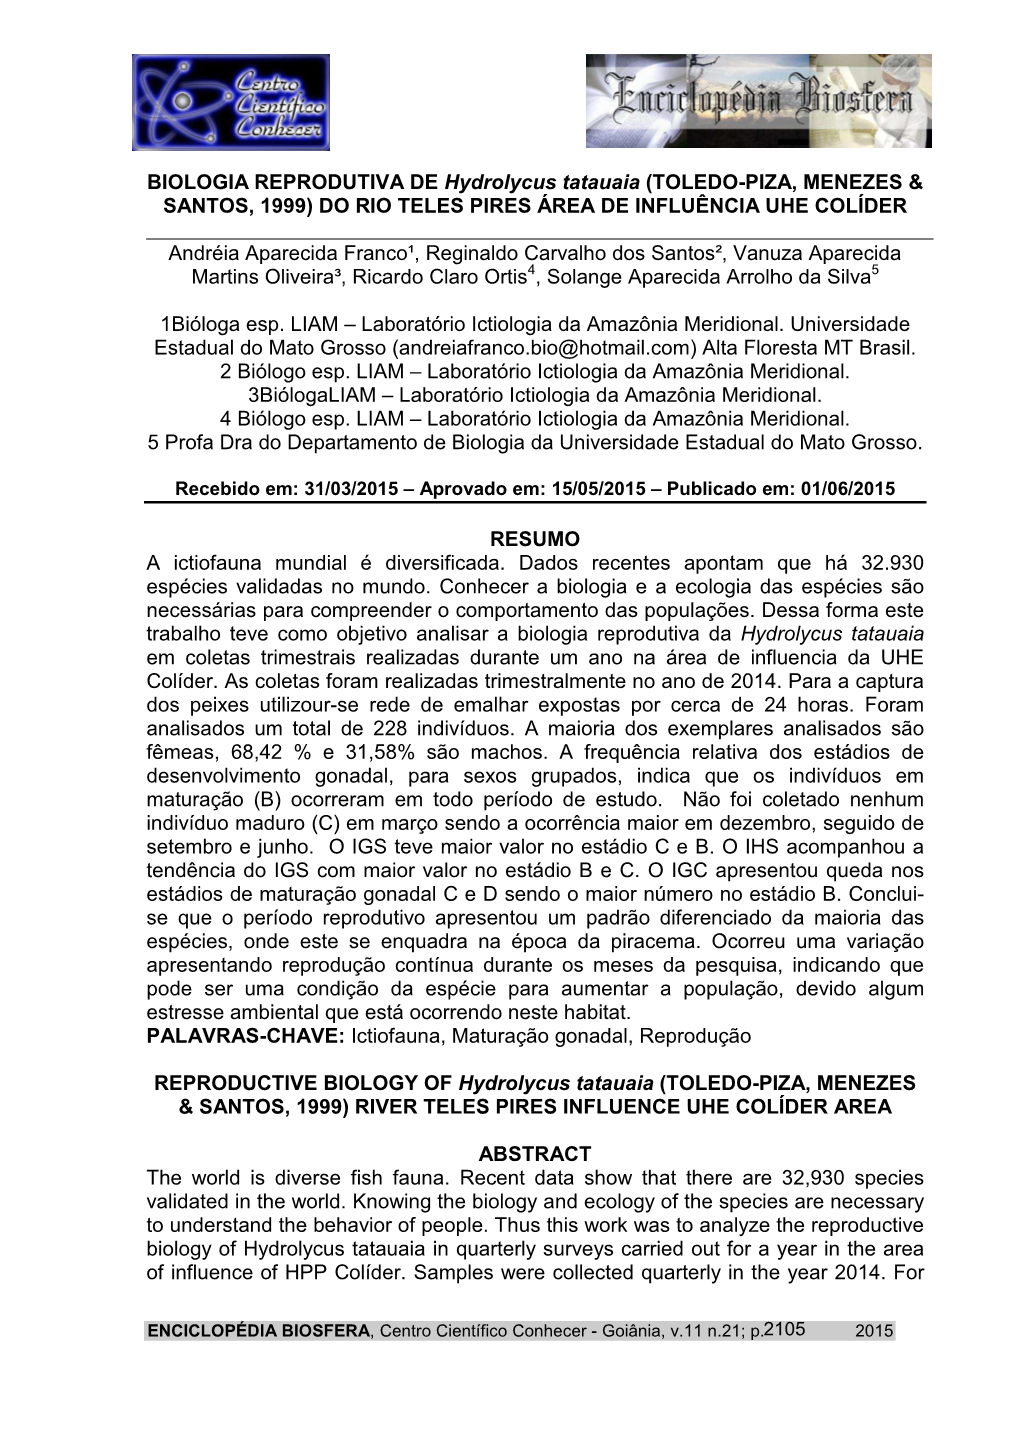 BIOLOGIA REPRODUTIVA DE Hydrolycus Tatauaia (TOLEDO-PIZA, MENEZES & SANTOS, 1999) DO RIO TELES PIRES ÁREA DE INFLUÊNCIA UHE COLÍDER